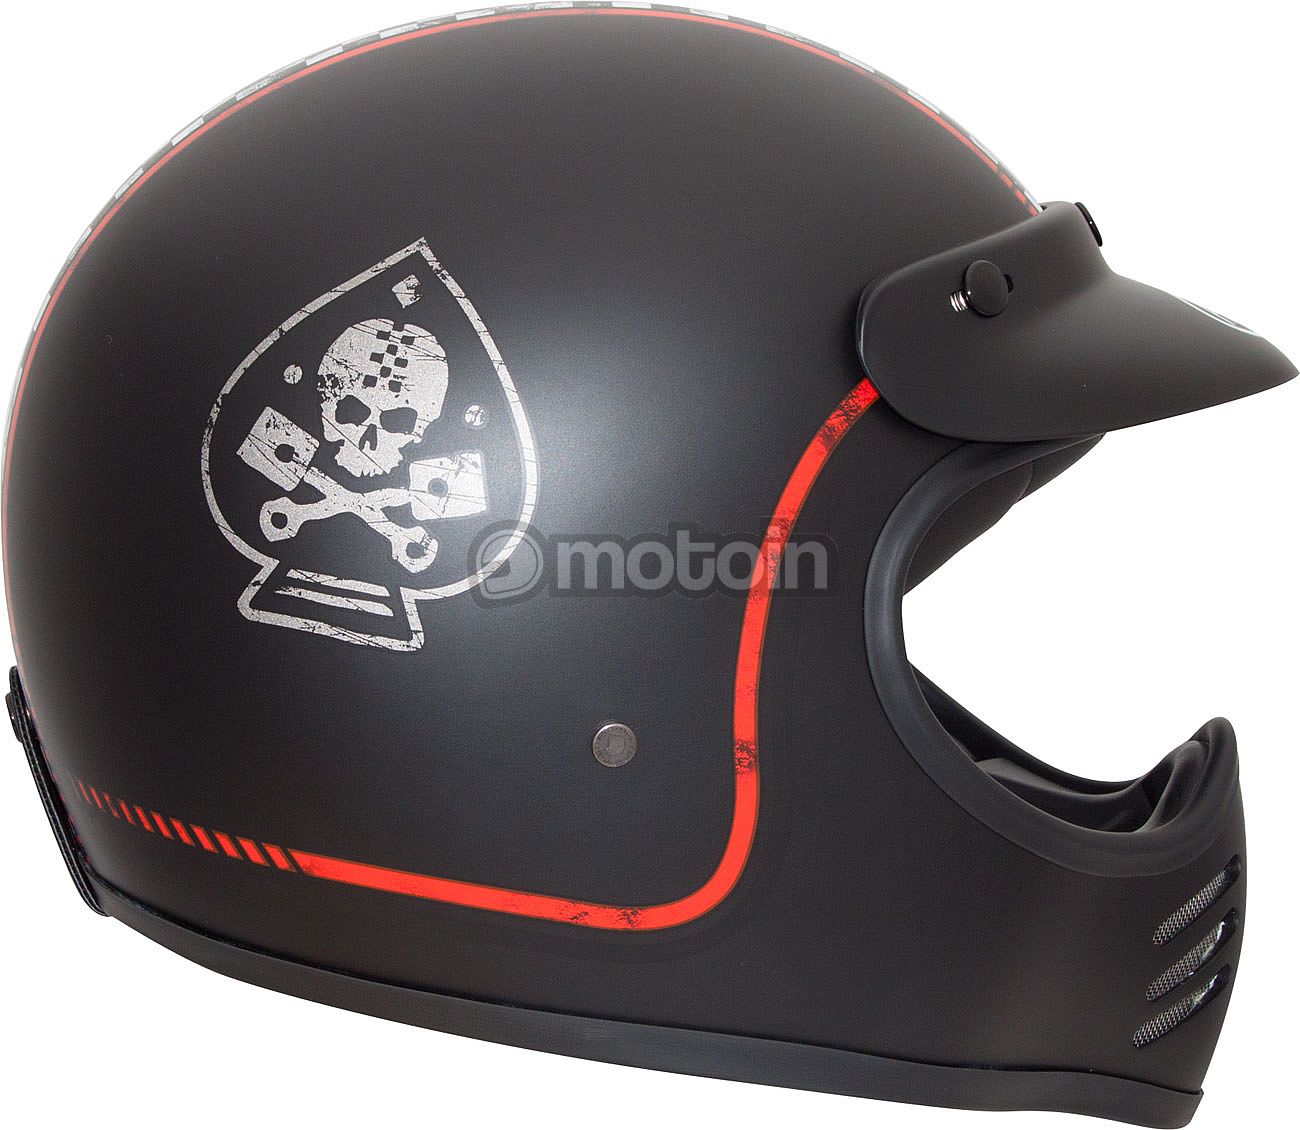 Premier Visière adapté pour le casque moto Trophy MX